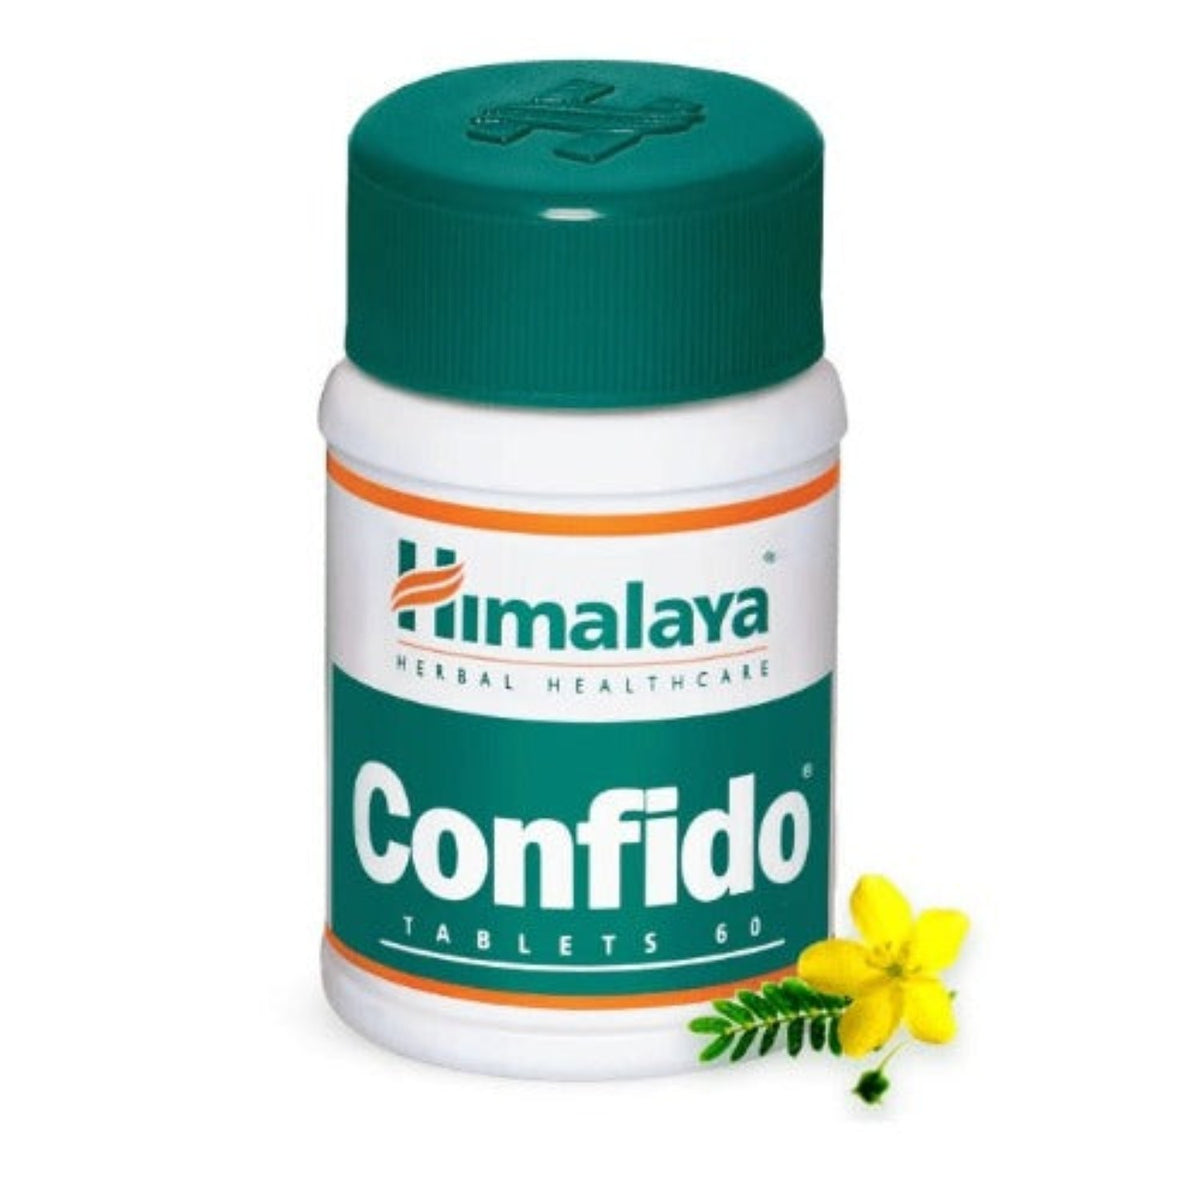 Himalaya Herbal Ayurvedic Confido Men's Health gibt Ihnen das nötige Selbstvertrauen, 60 Tabletten